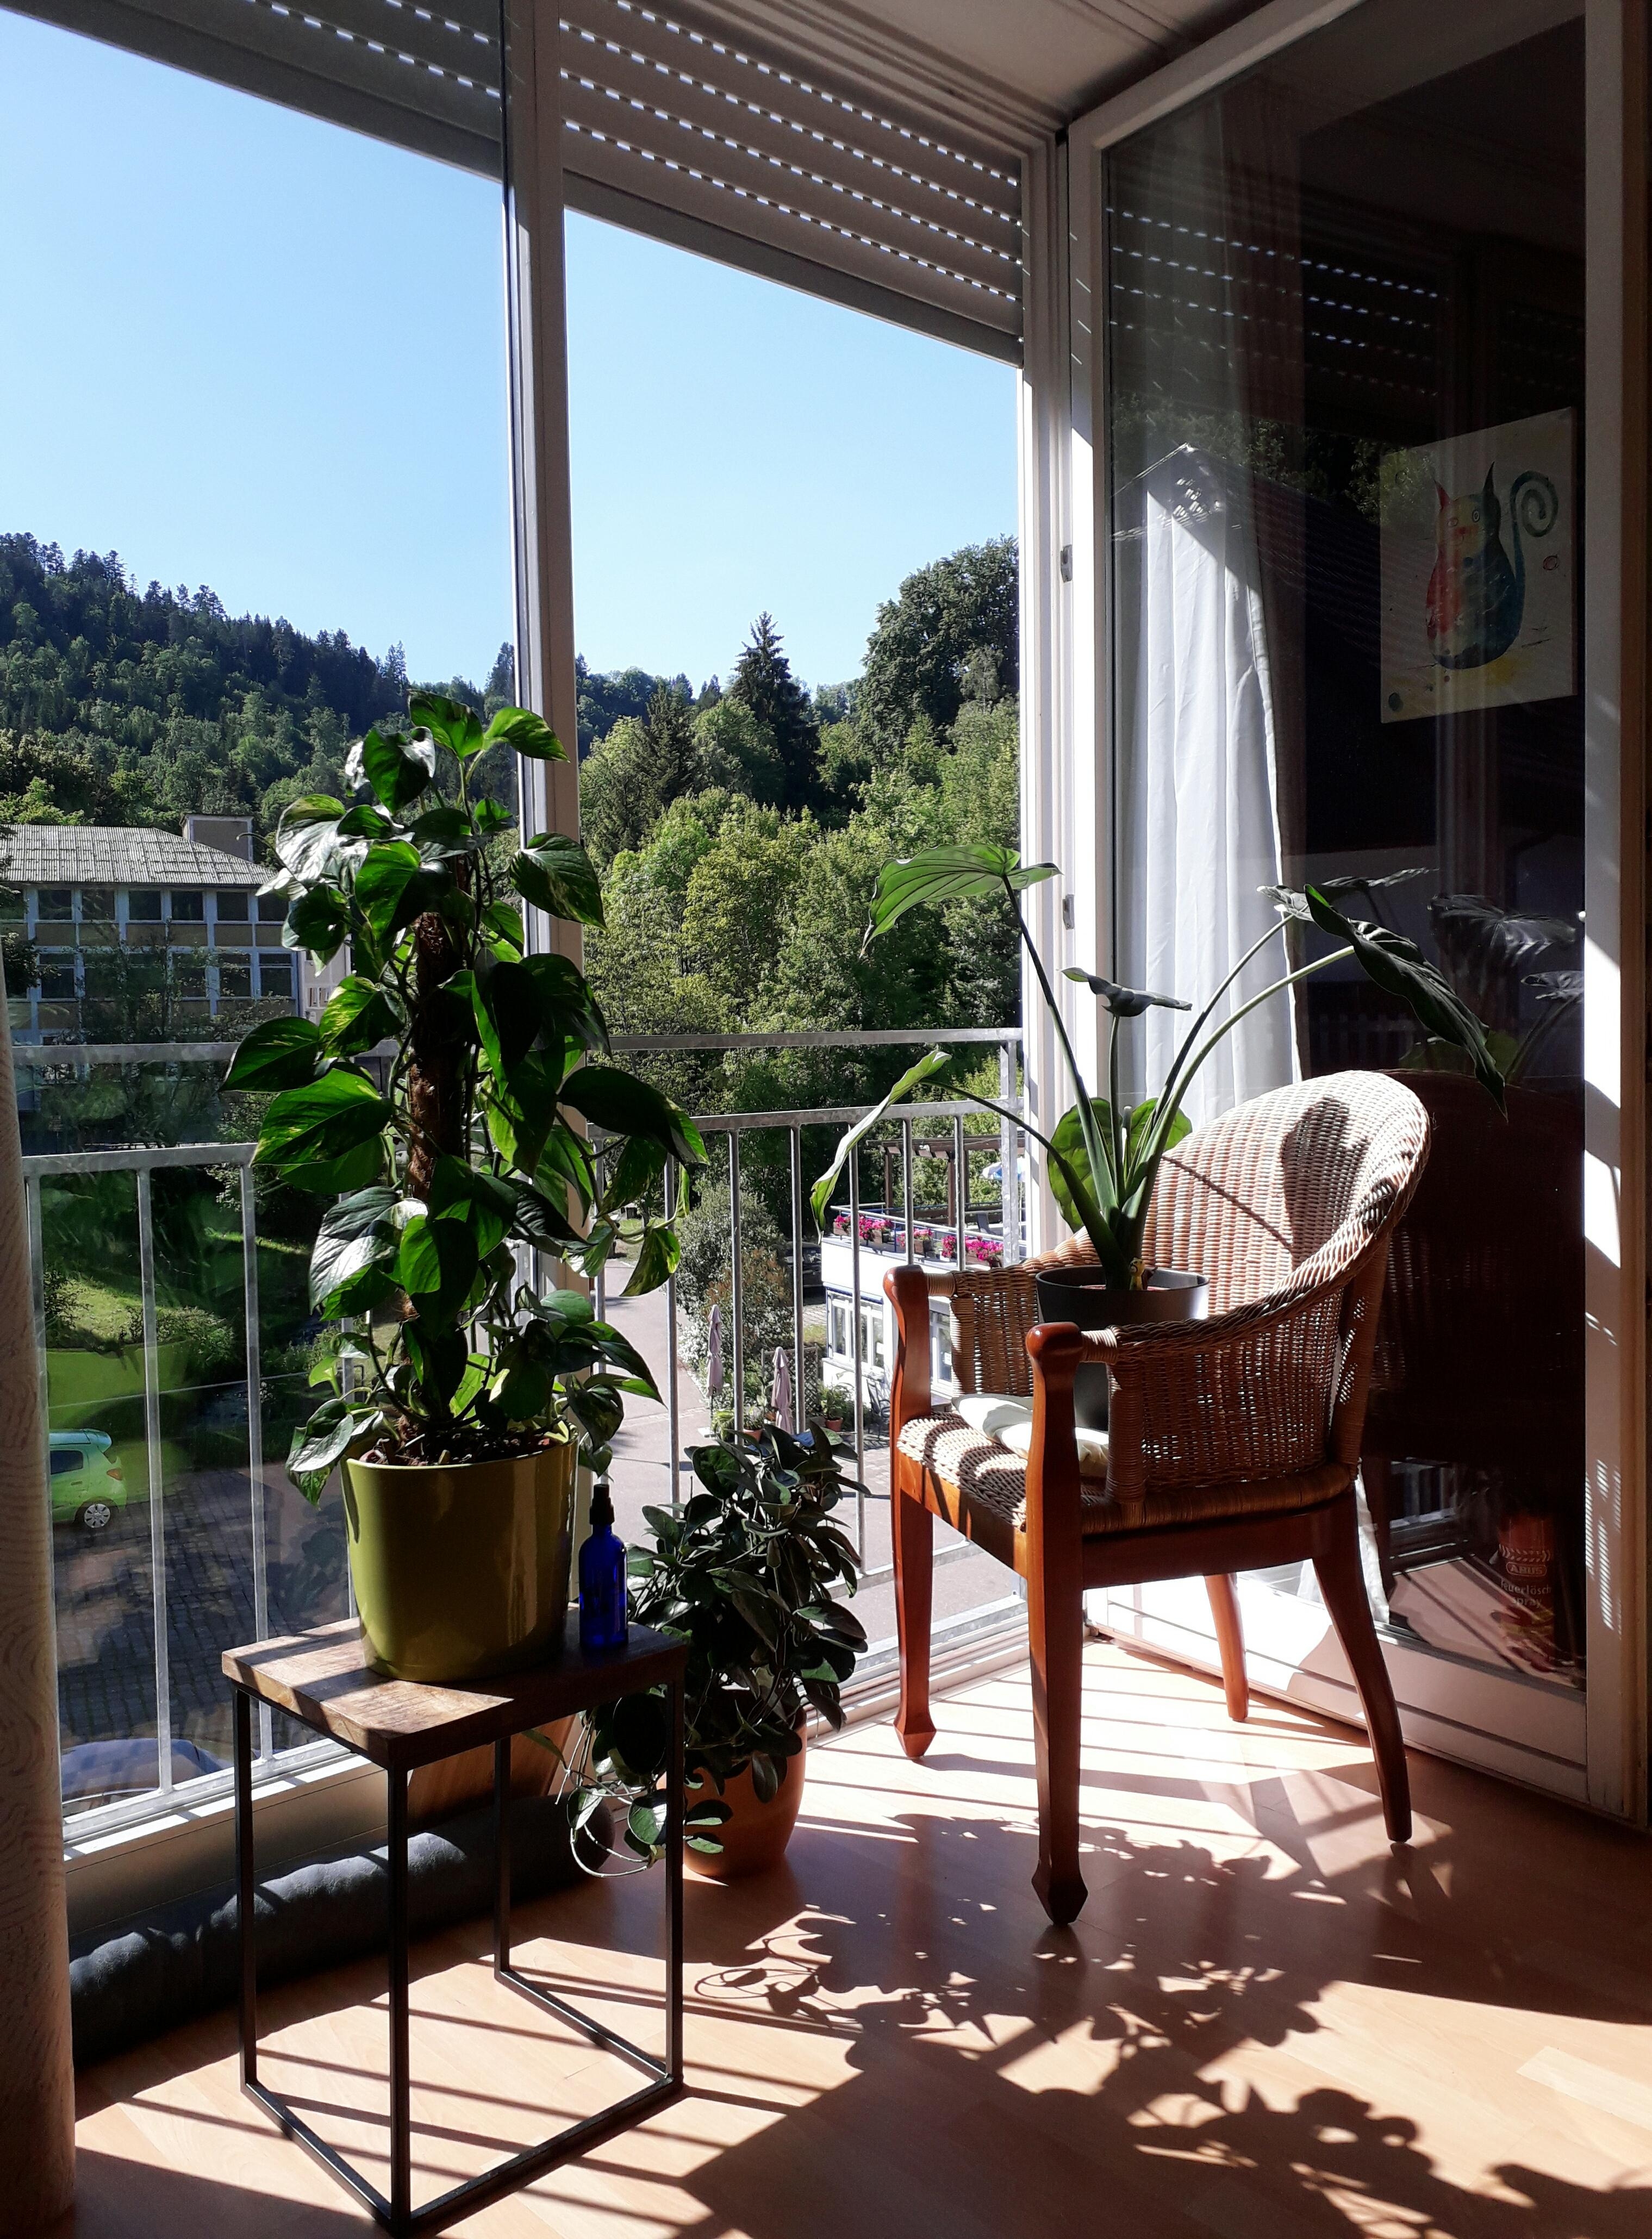 Sonnenbad ☀️🍀🌱🌵
#pflanzen #urbanjungle #pflanzenliebe #rattanstuhl #grün #ausblick #wohnzimmer #fenster 